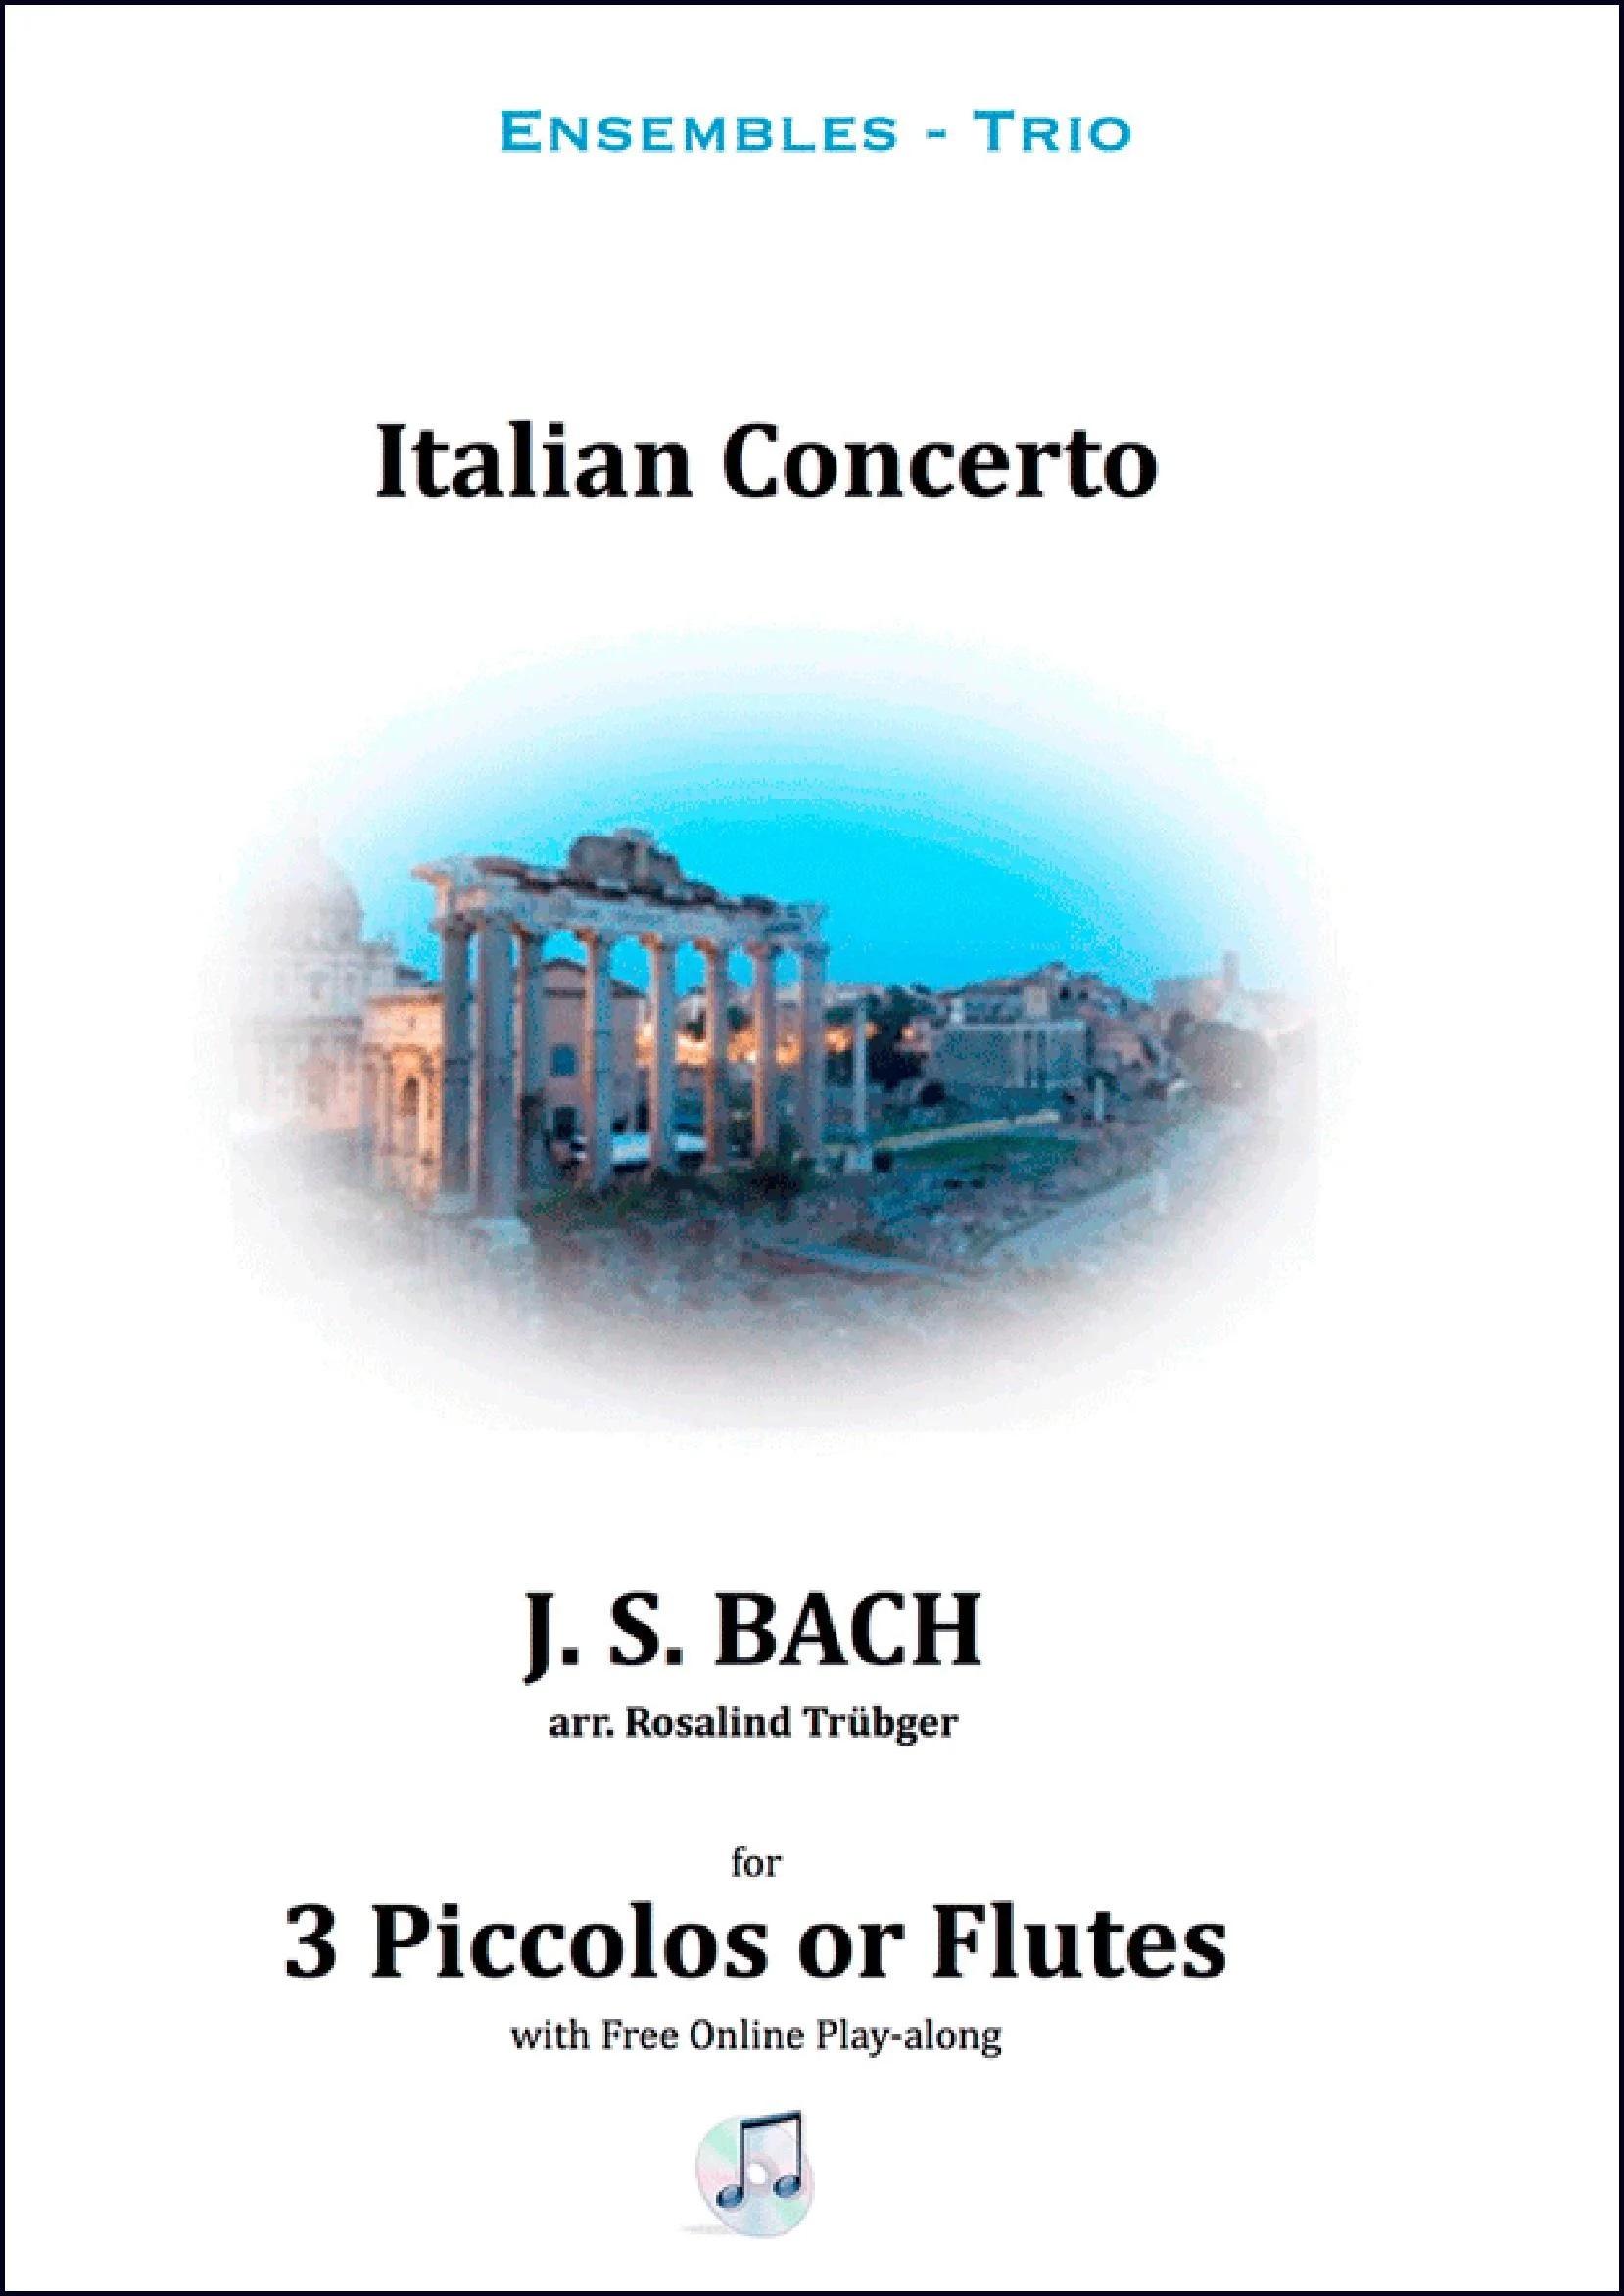 Italian Concerto (BWV 971) arr. piccolo/flute trio - J.S.Bach | Suono Flauti